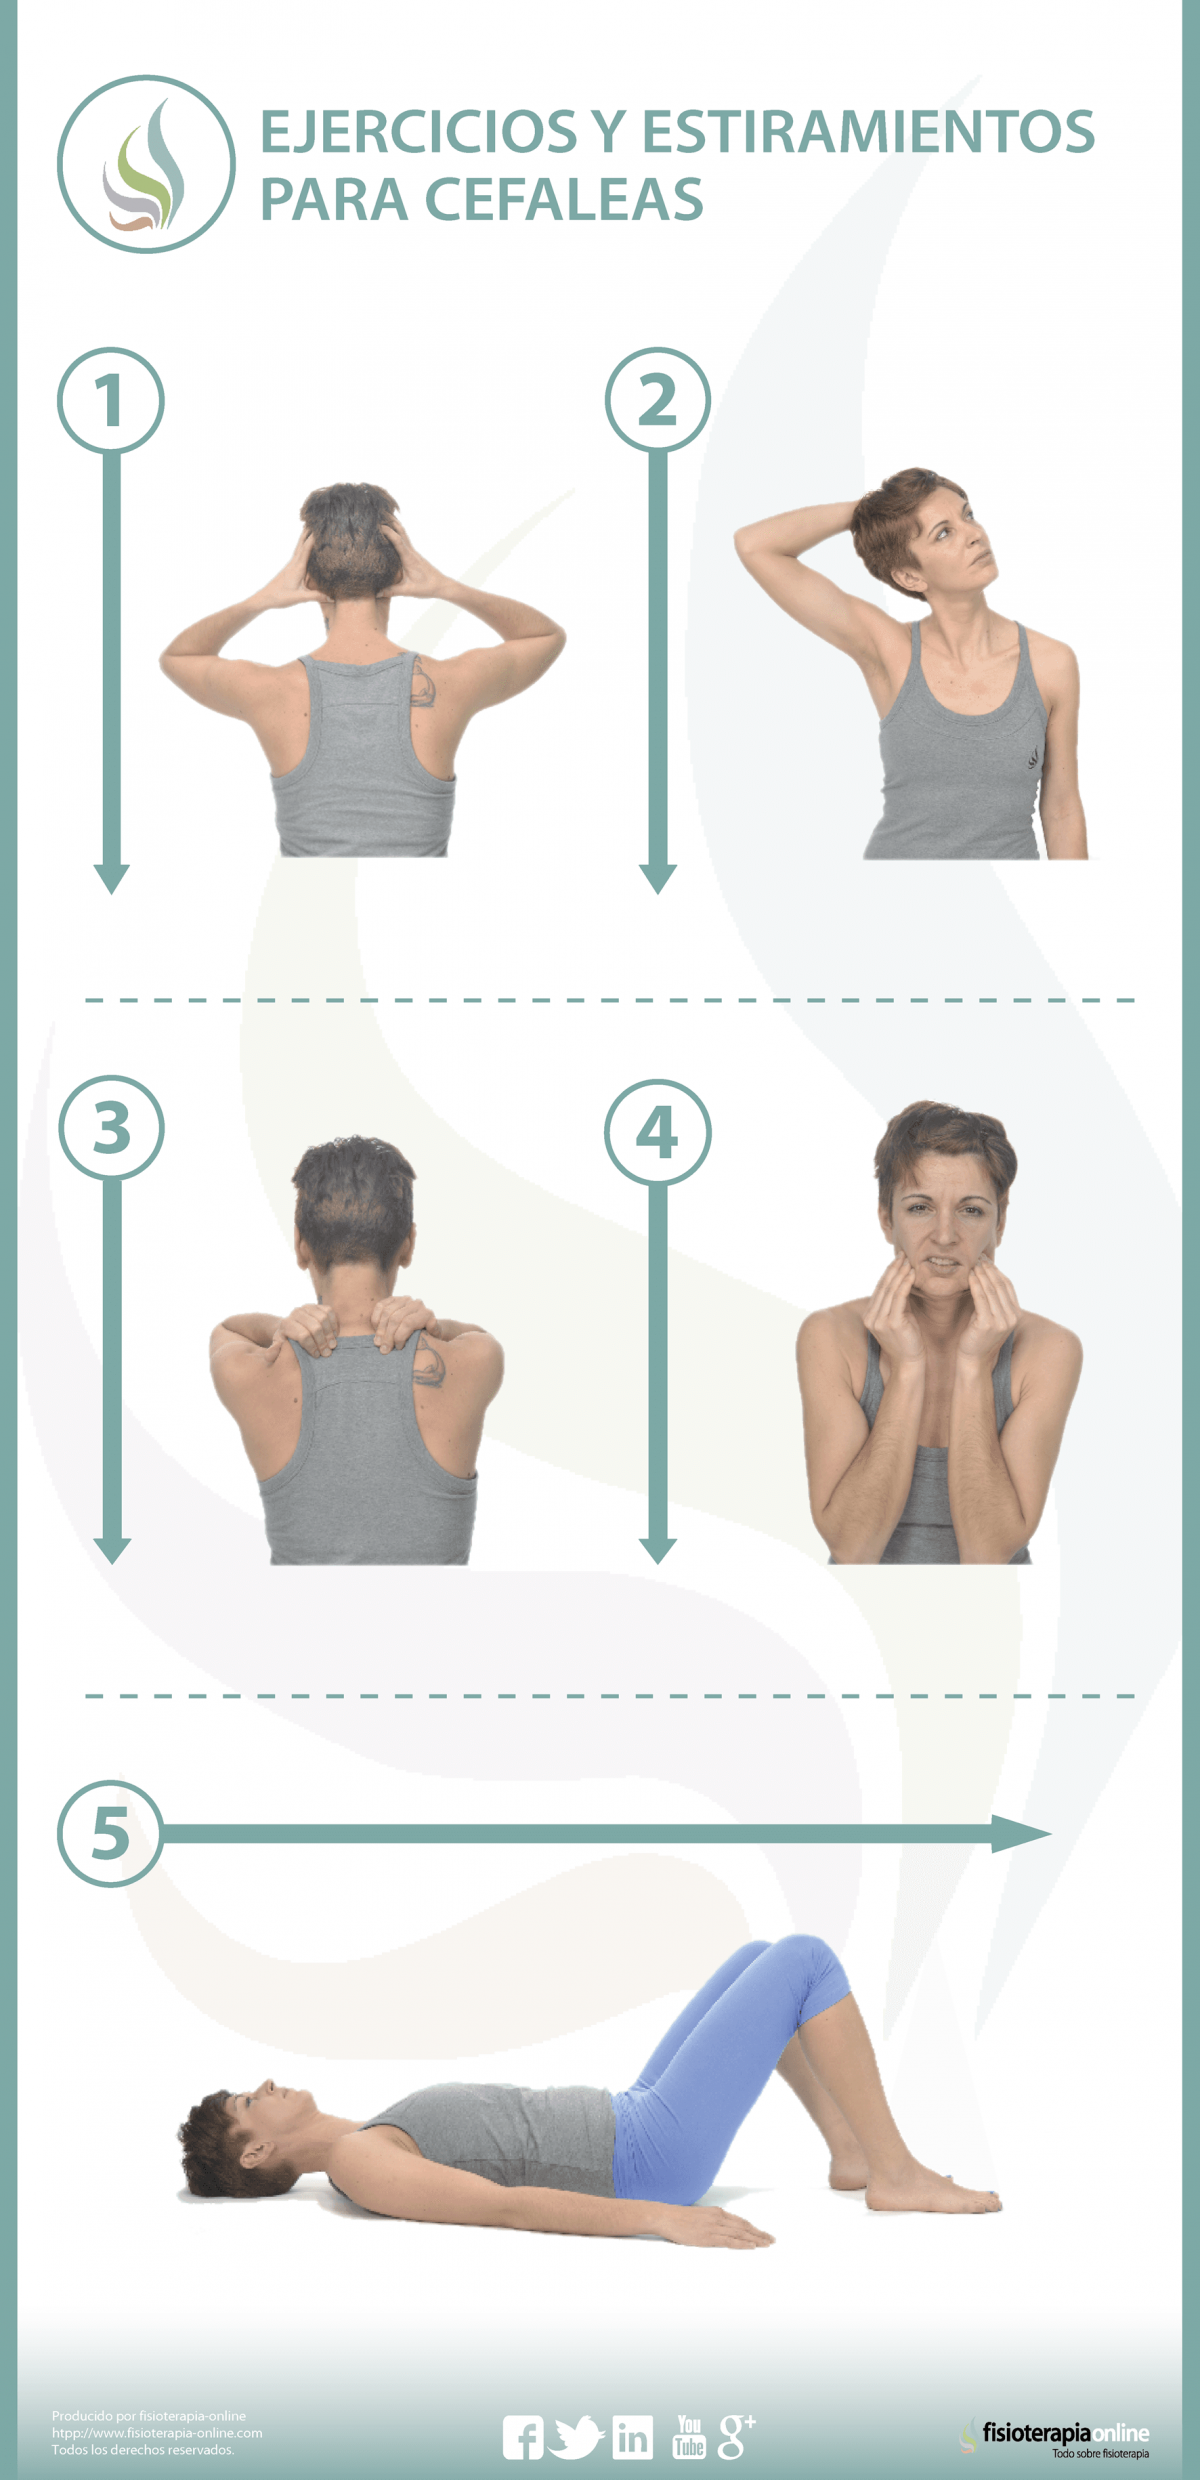 Mejora tus cefaleas o dolores de cabeza con estos ejercicios y estiramientos